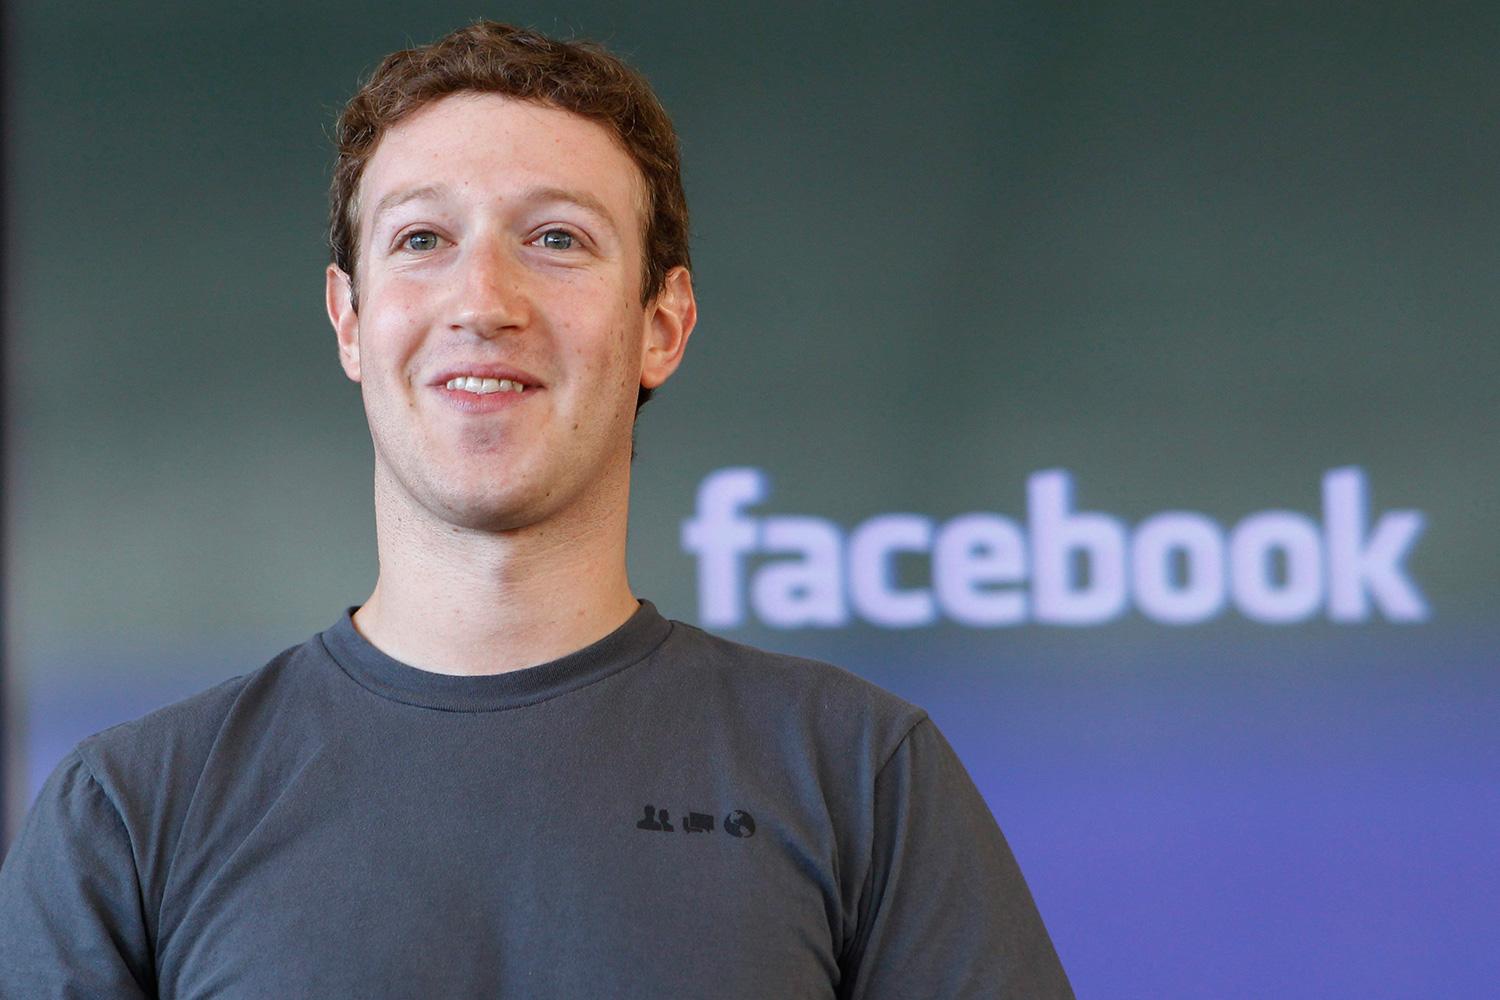 Mark Zuckenberg: Perusahaan Facebook akan Berganti Nama Menjadi ‘Meta’